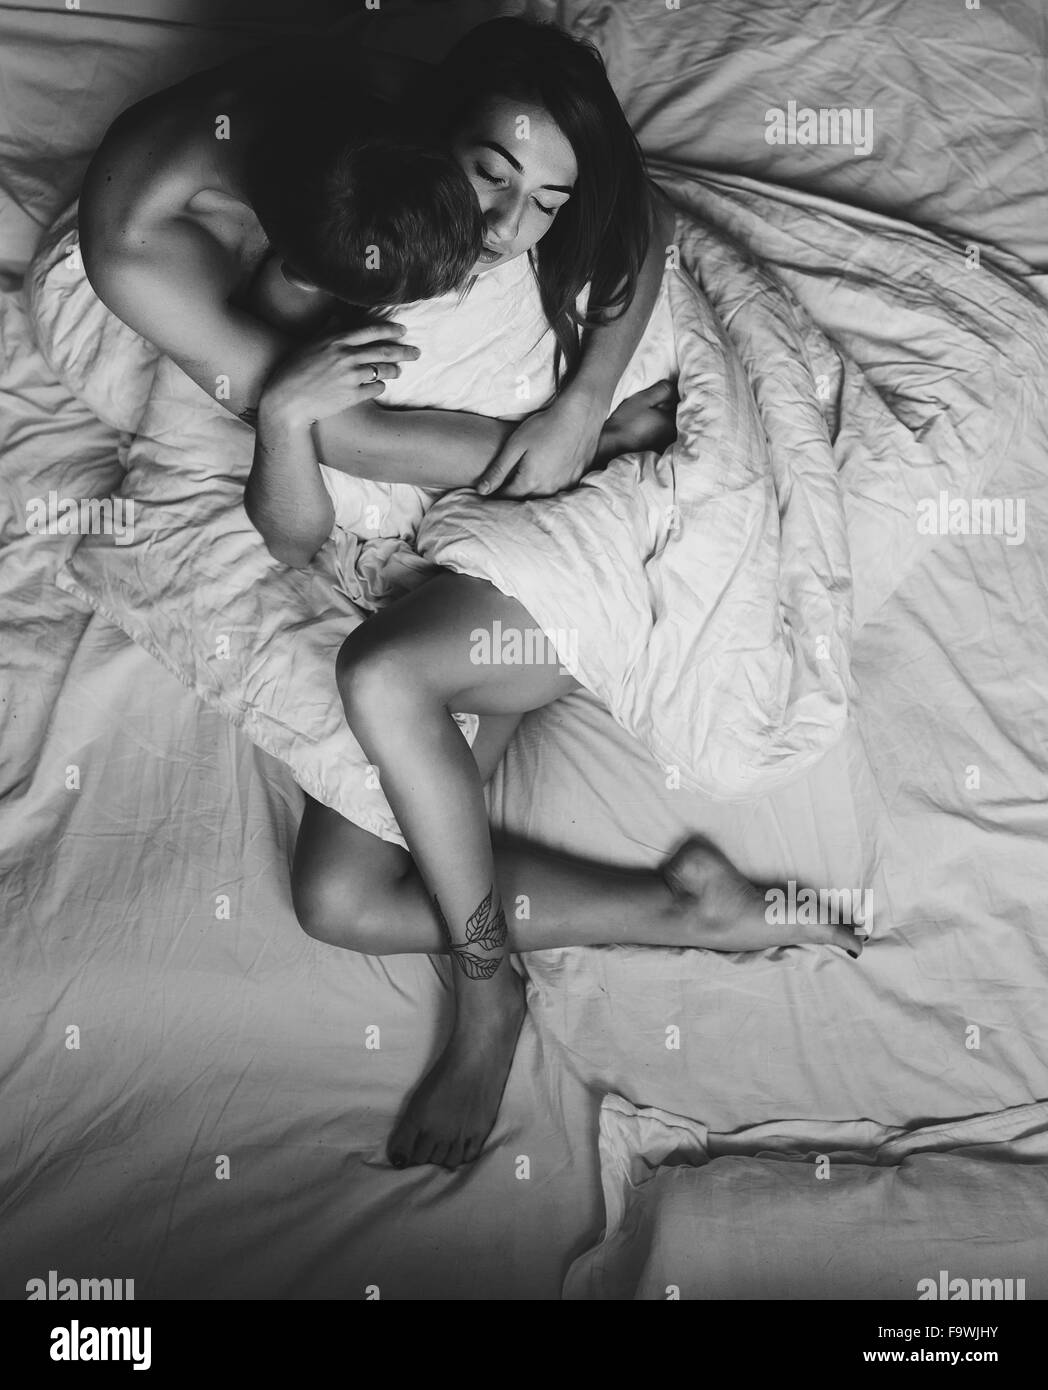 Jeune couple dans le même lit Photo Stock - Alamy